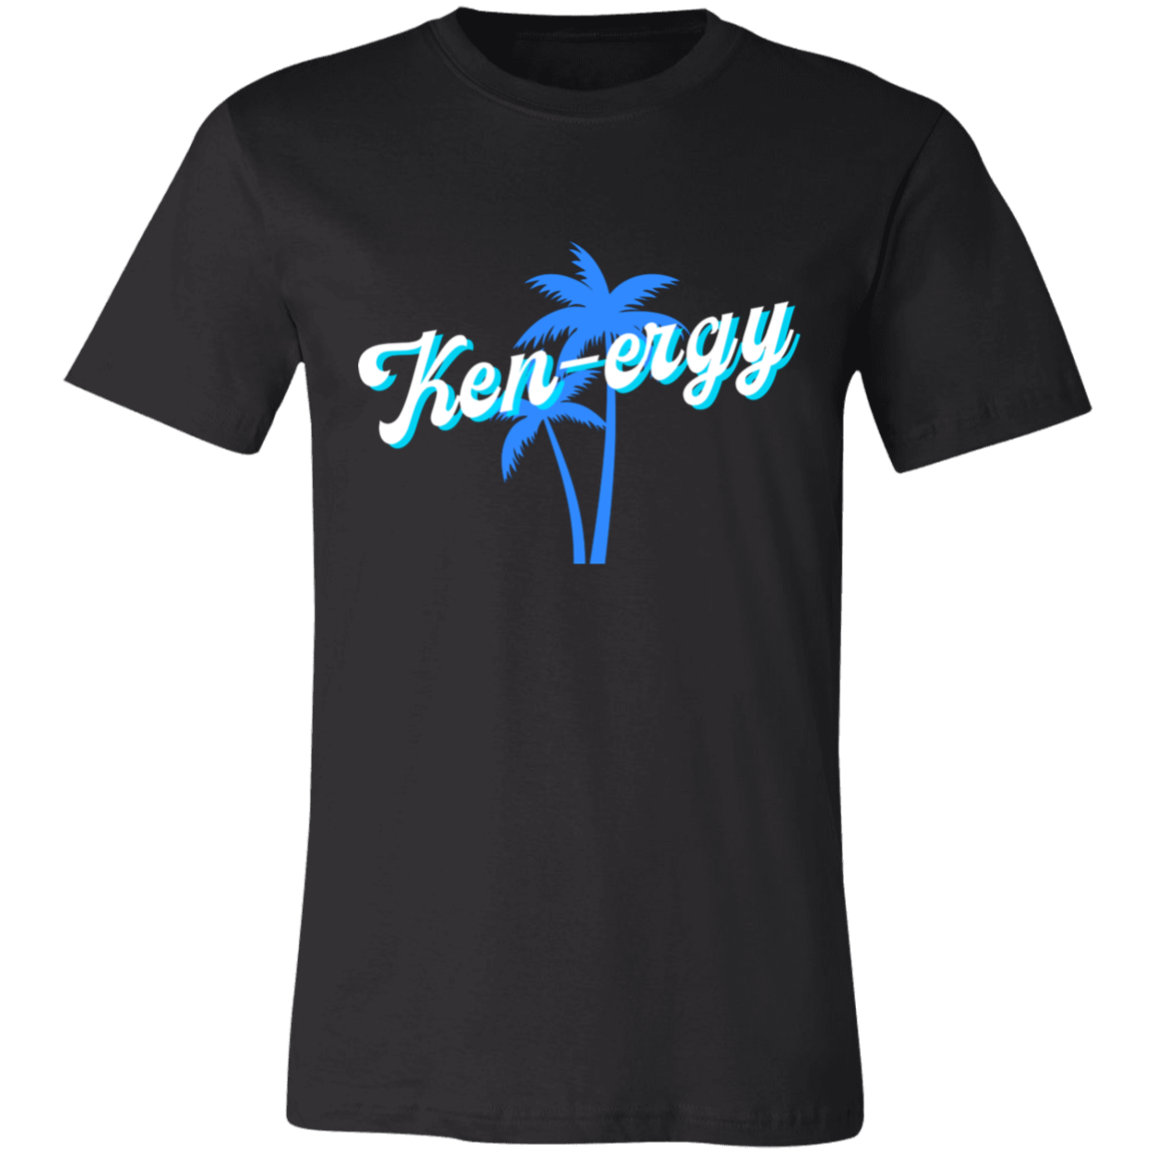 Ken-ergy Men's T-Shirt